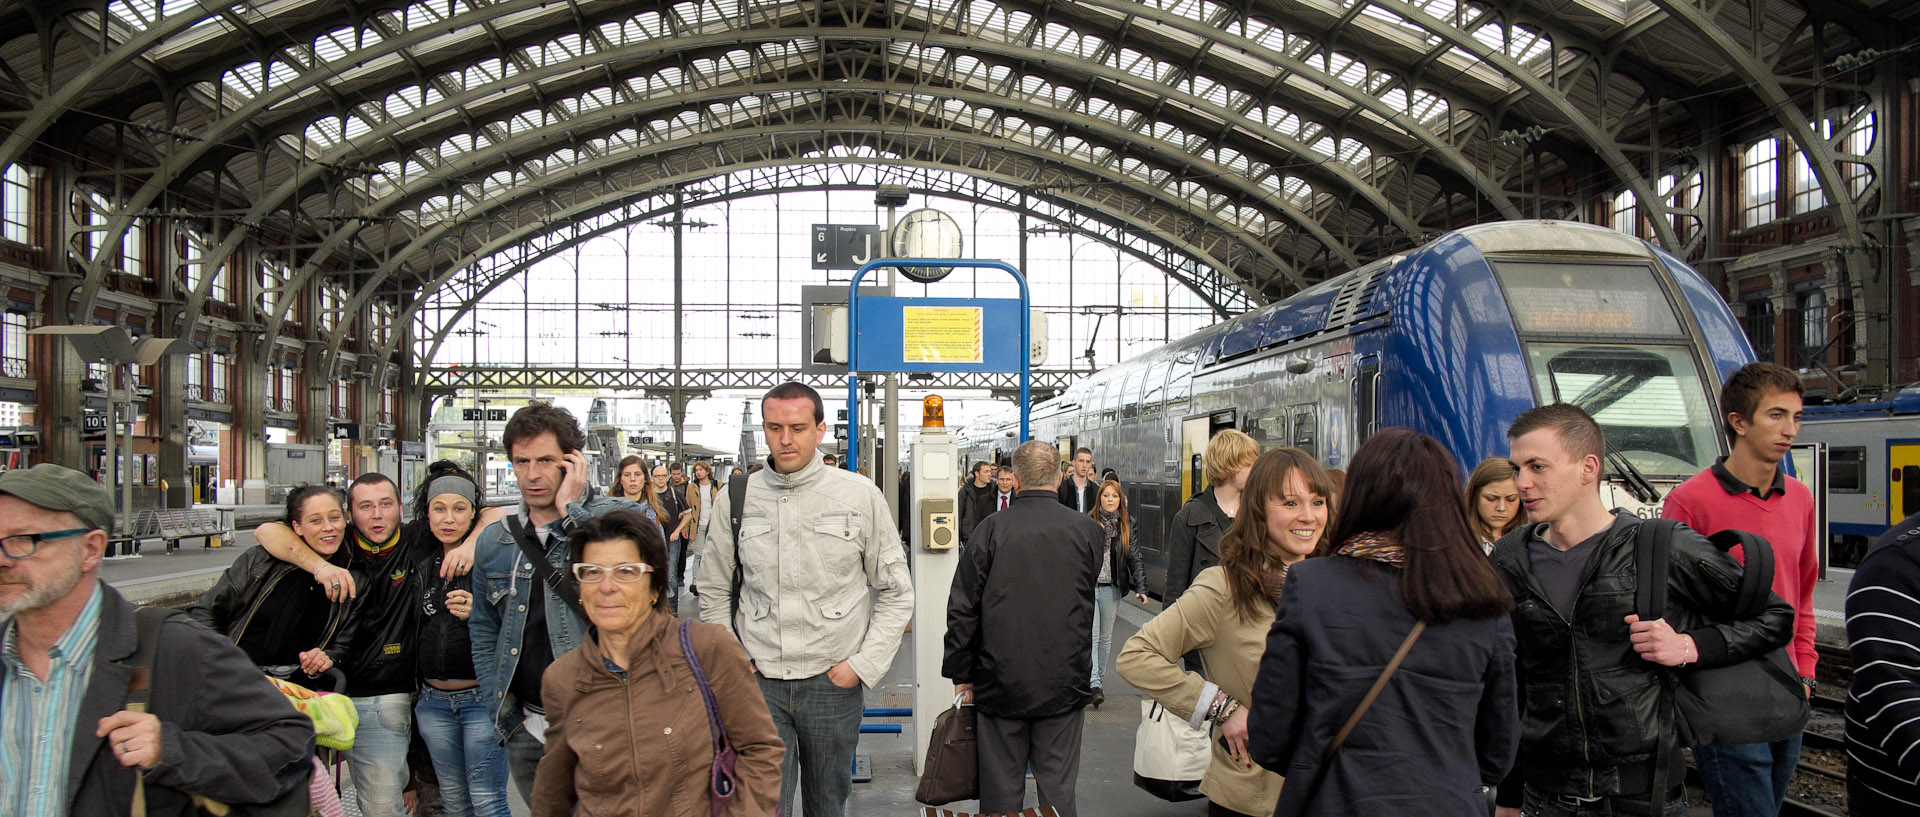 Voyageurs descendant d'un train, gare de Lille Flandres.